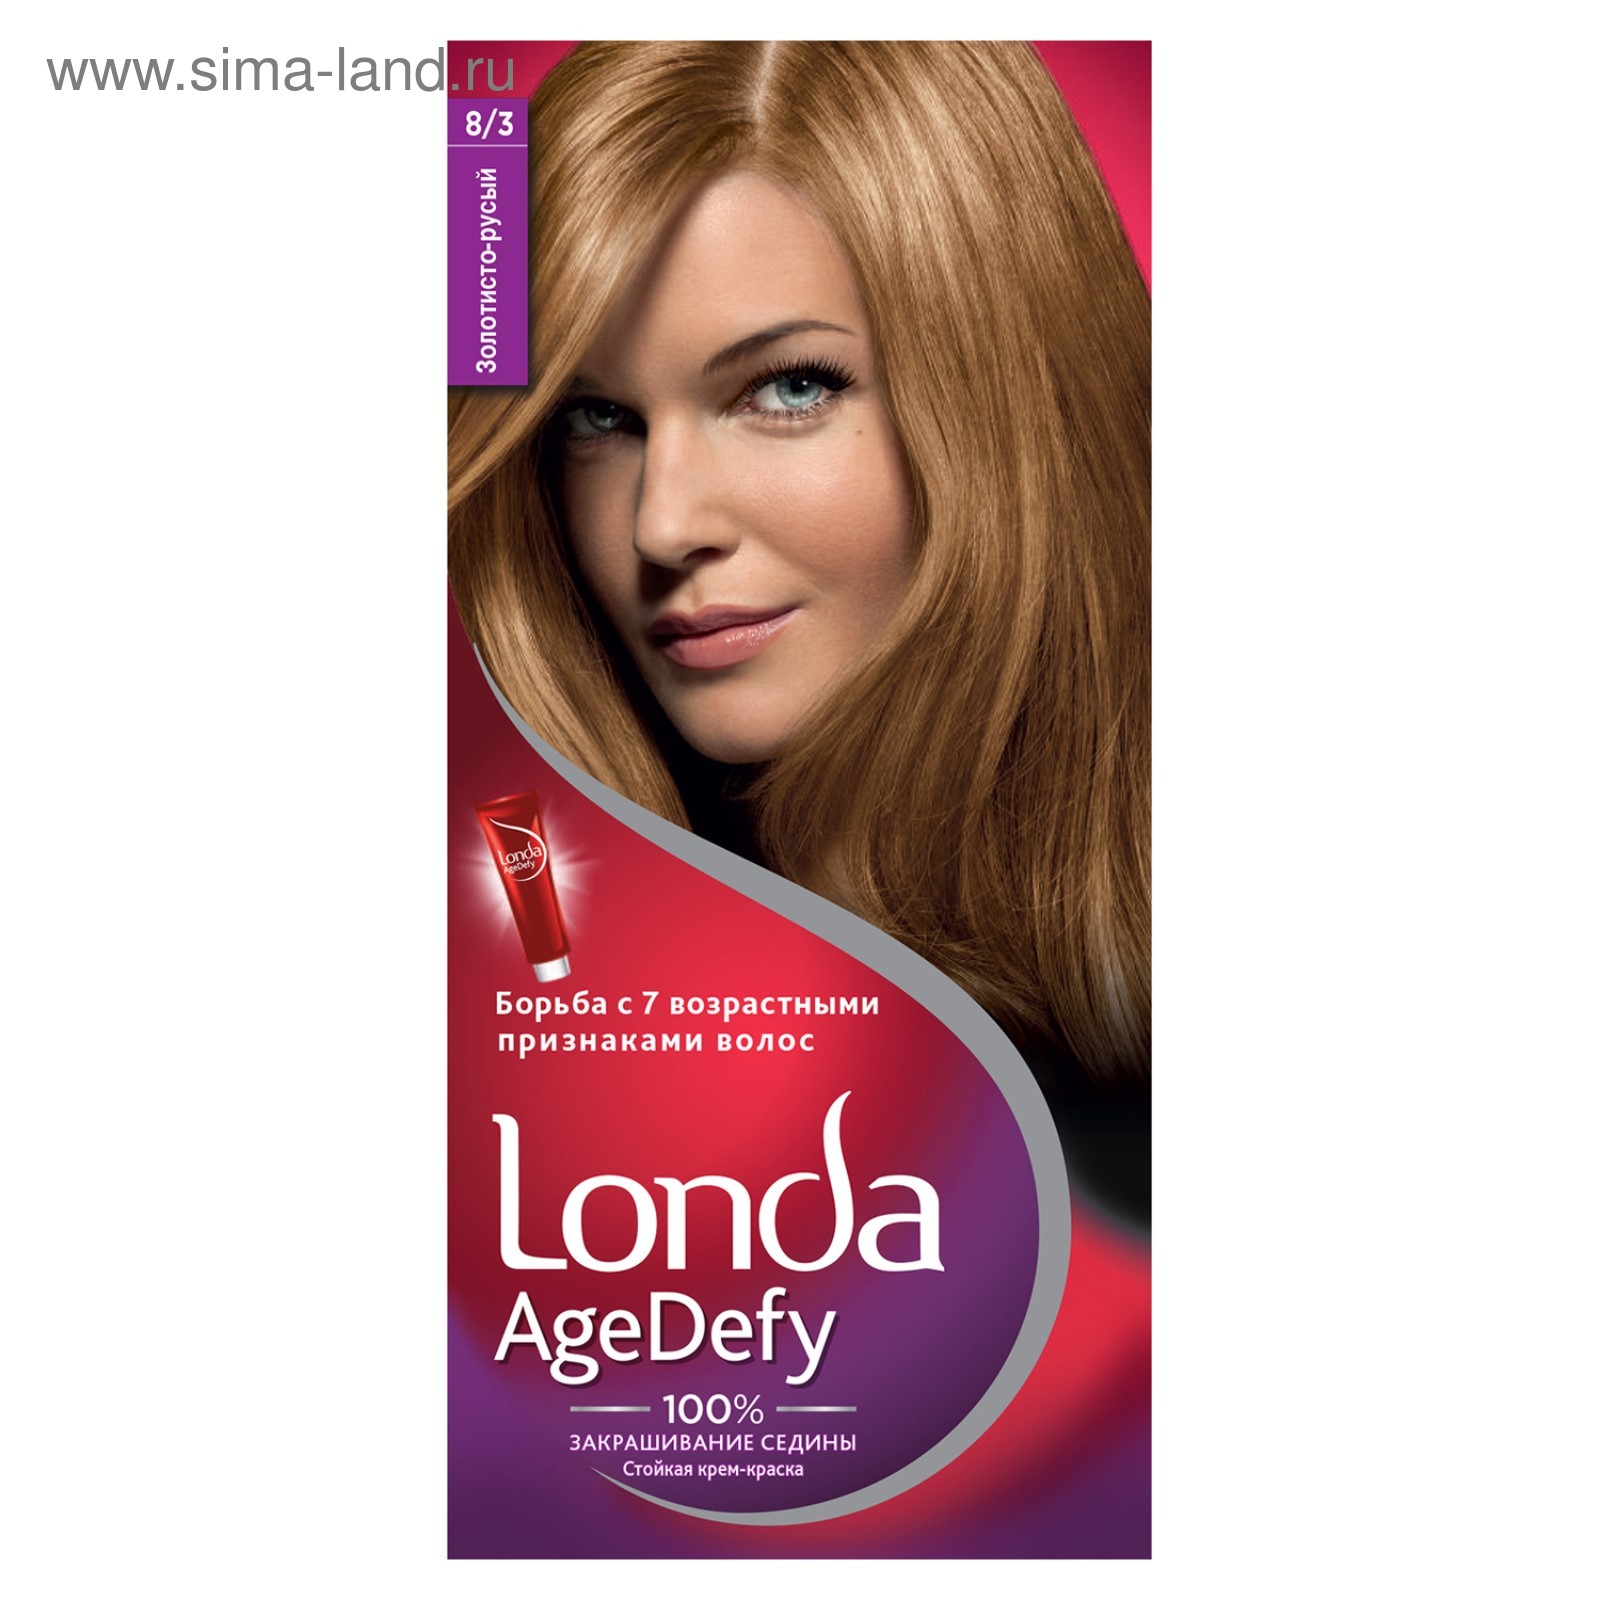 Londa крем-краска для волос стойкая 17 светло-русый